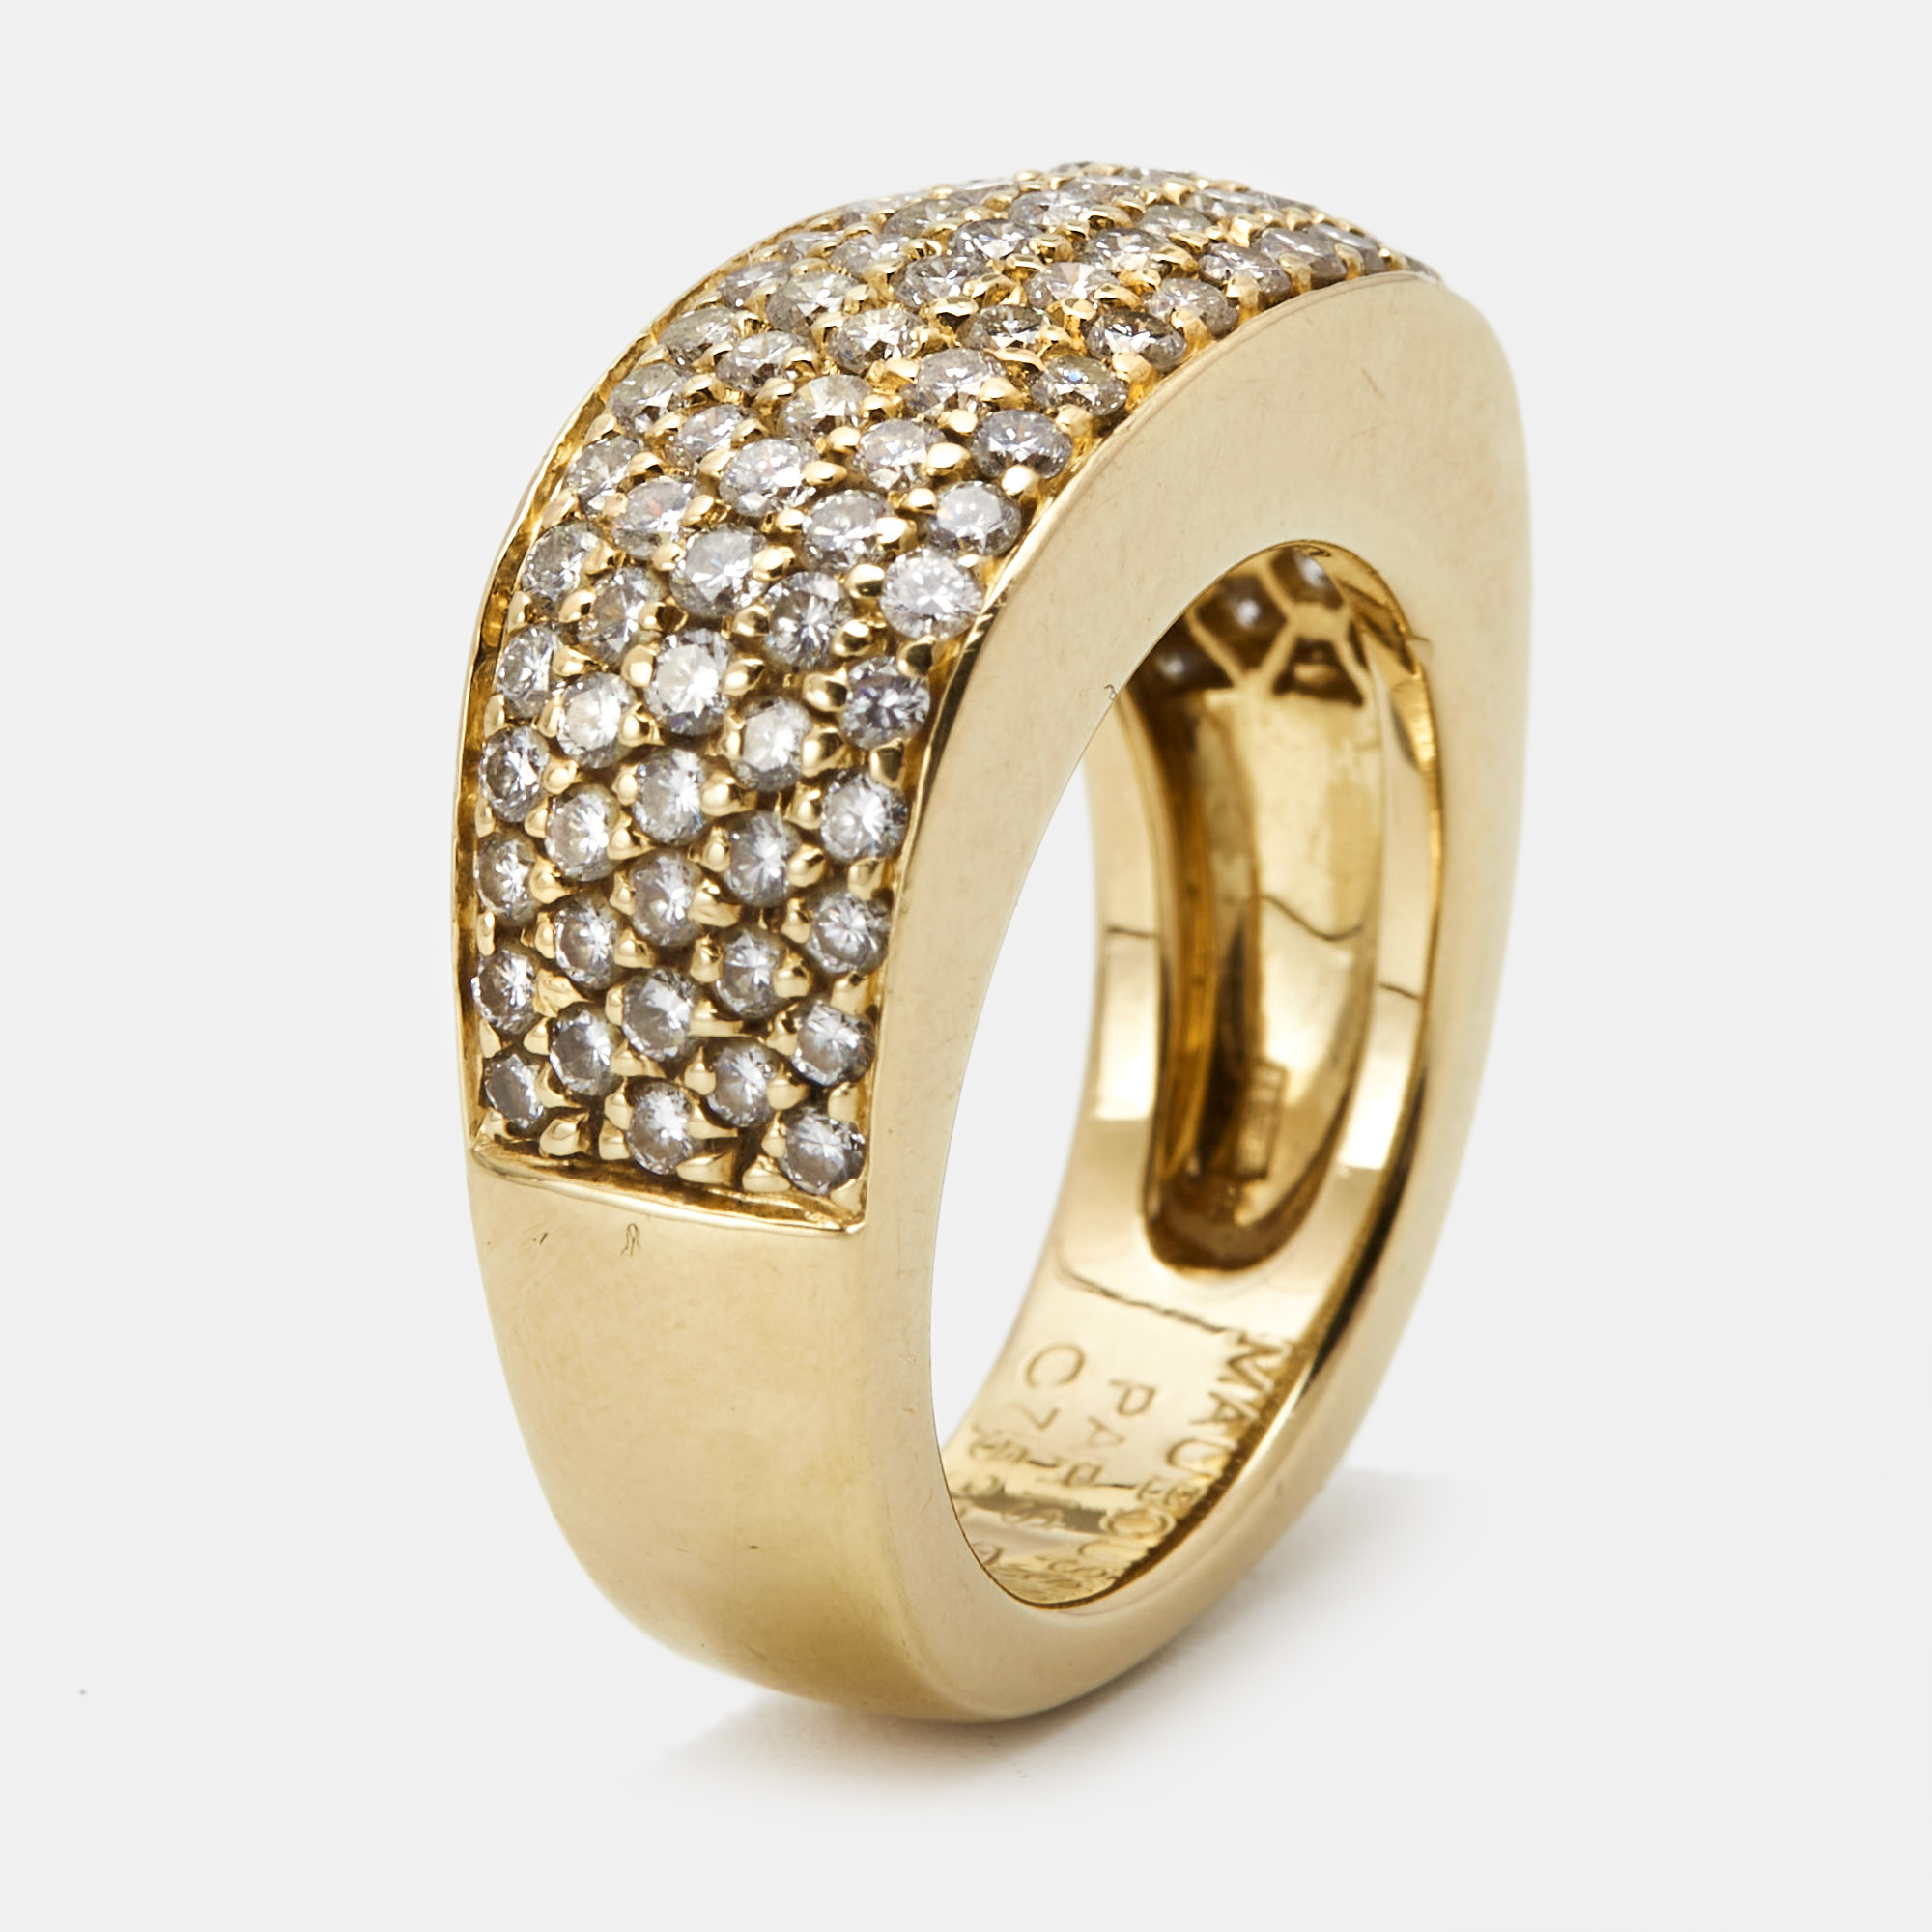 Mauboussin diamonds 18k yellow gold ring size 54